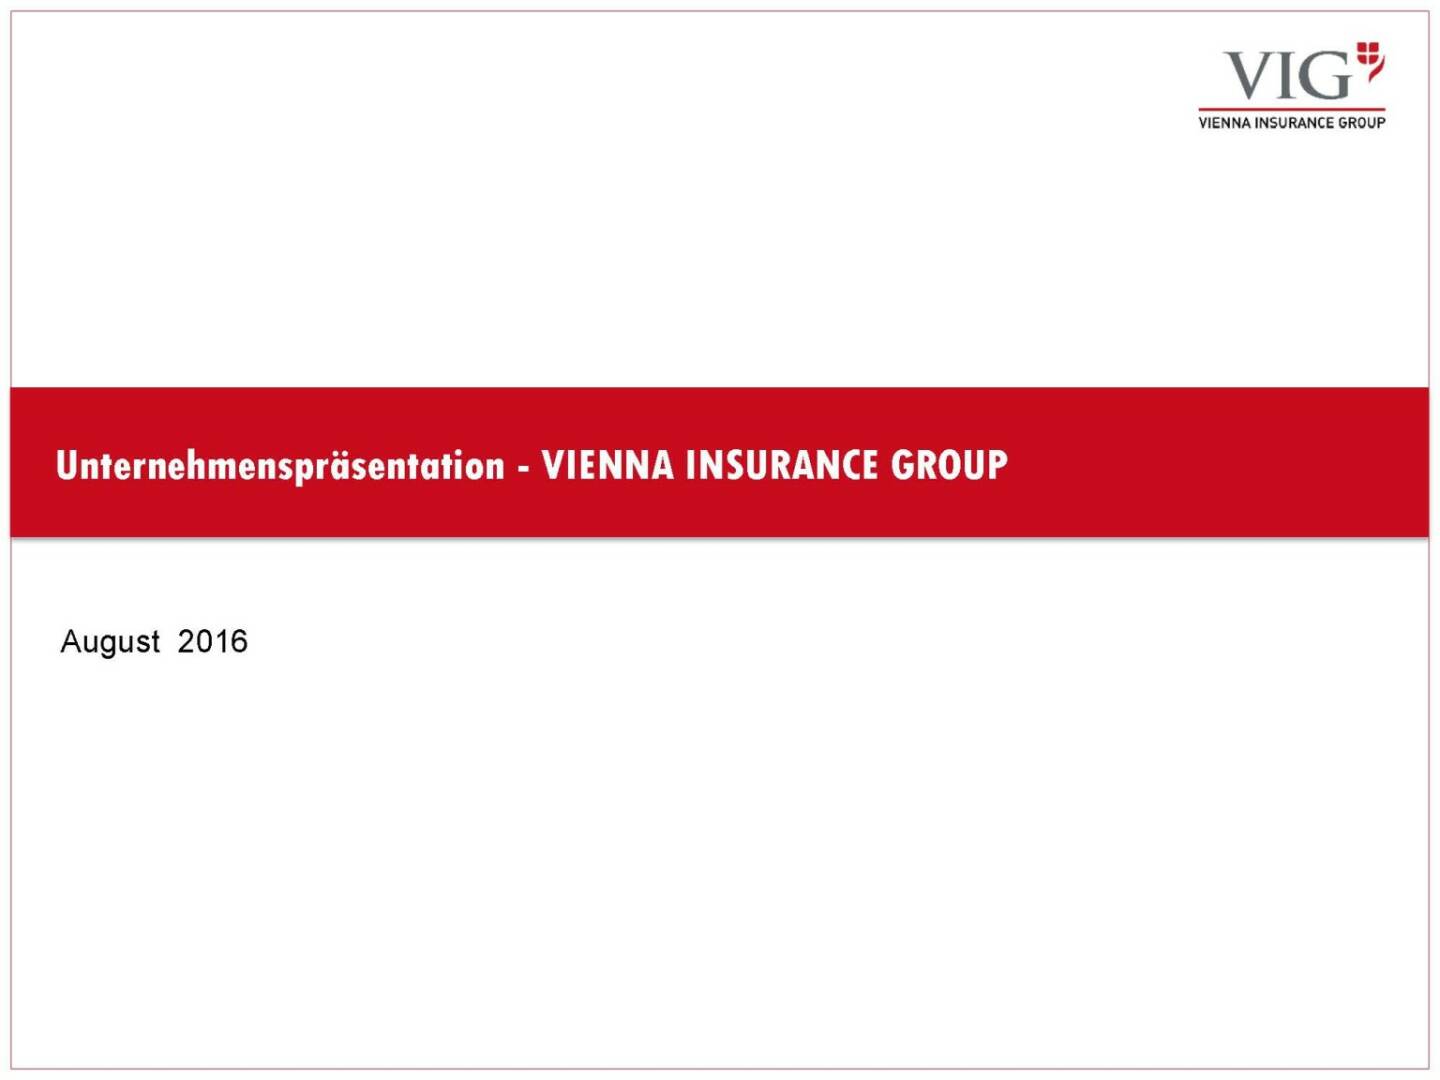 Unternehmenspräsentation Vienna Insurance Group